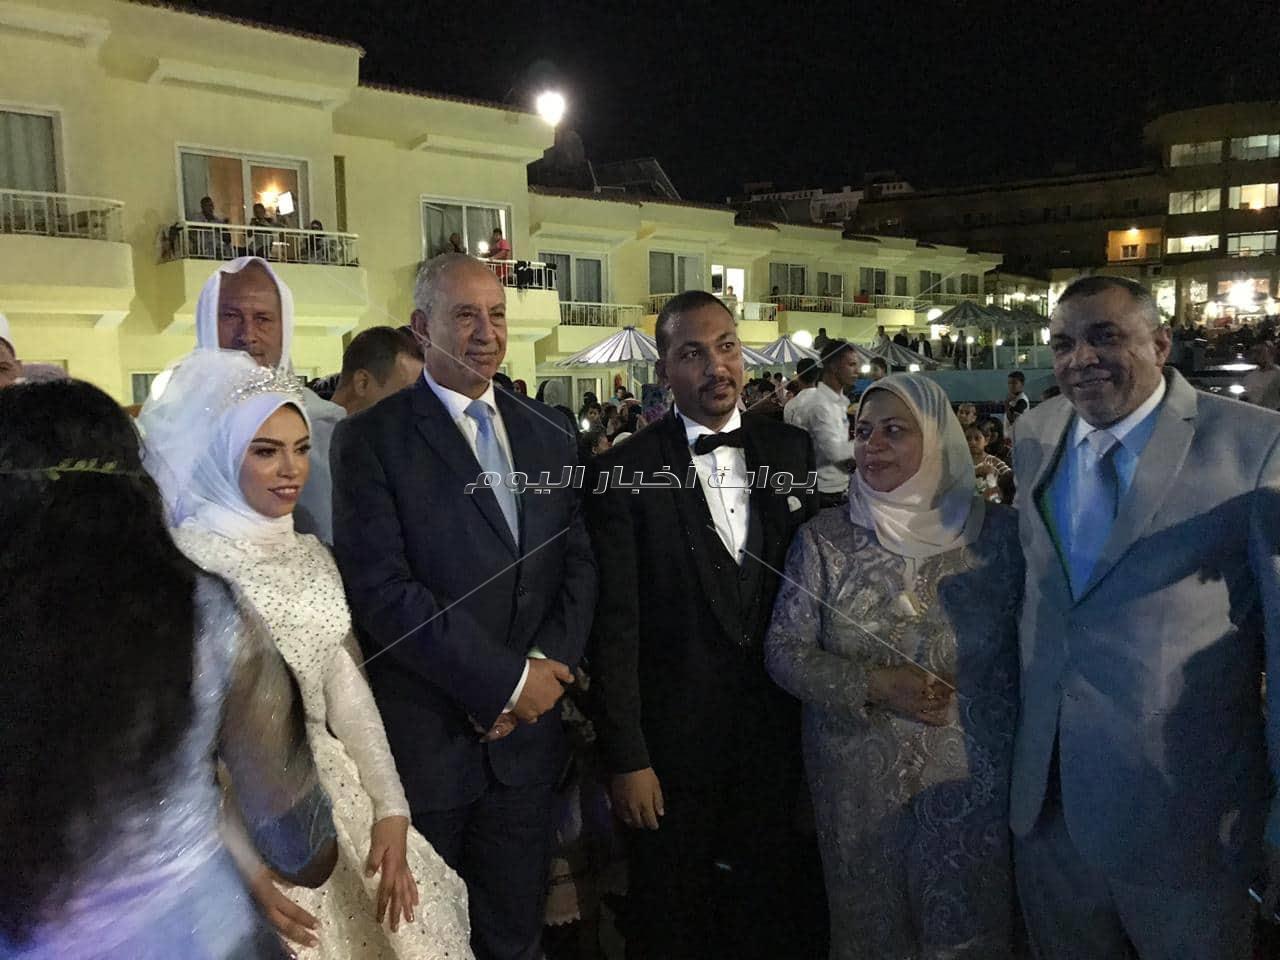 صور| جابر طابع يحتفل بزفاف كريمته «سارة» في الغردقة